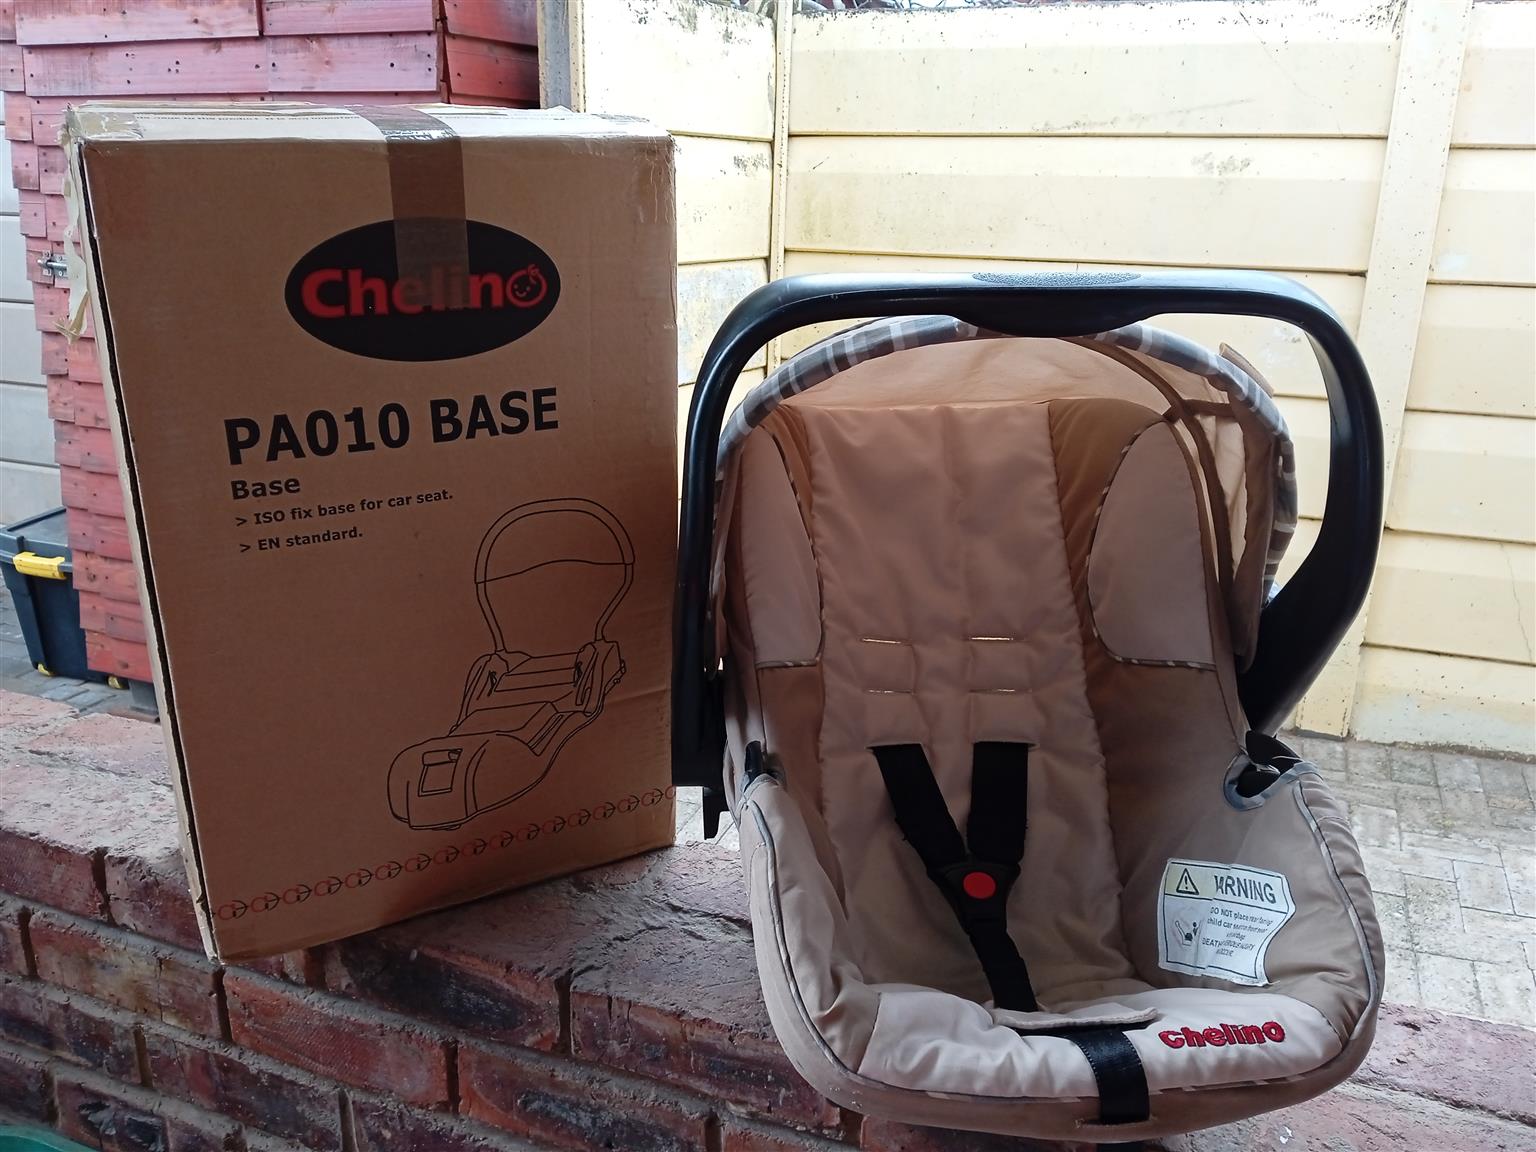 Chelino Infant Car Seat & Isofix Base